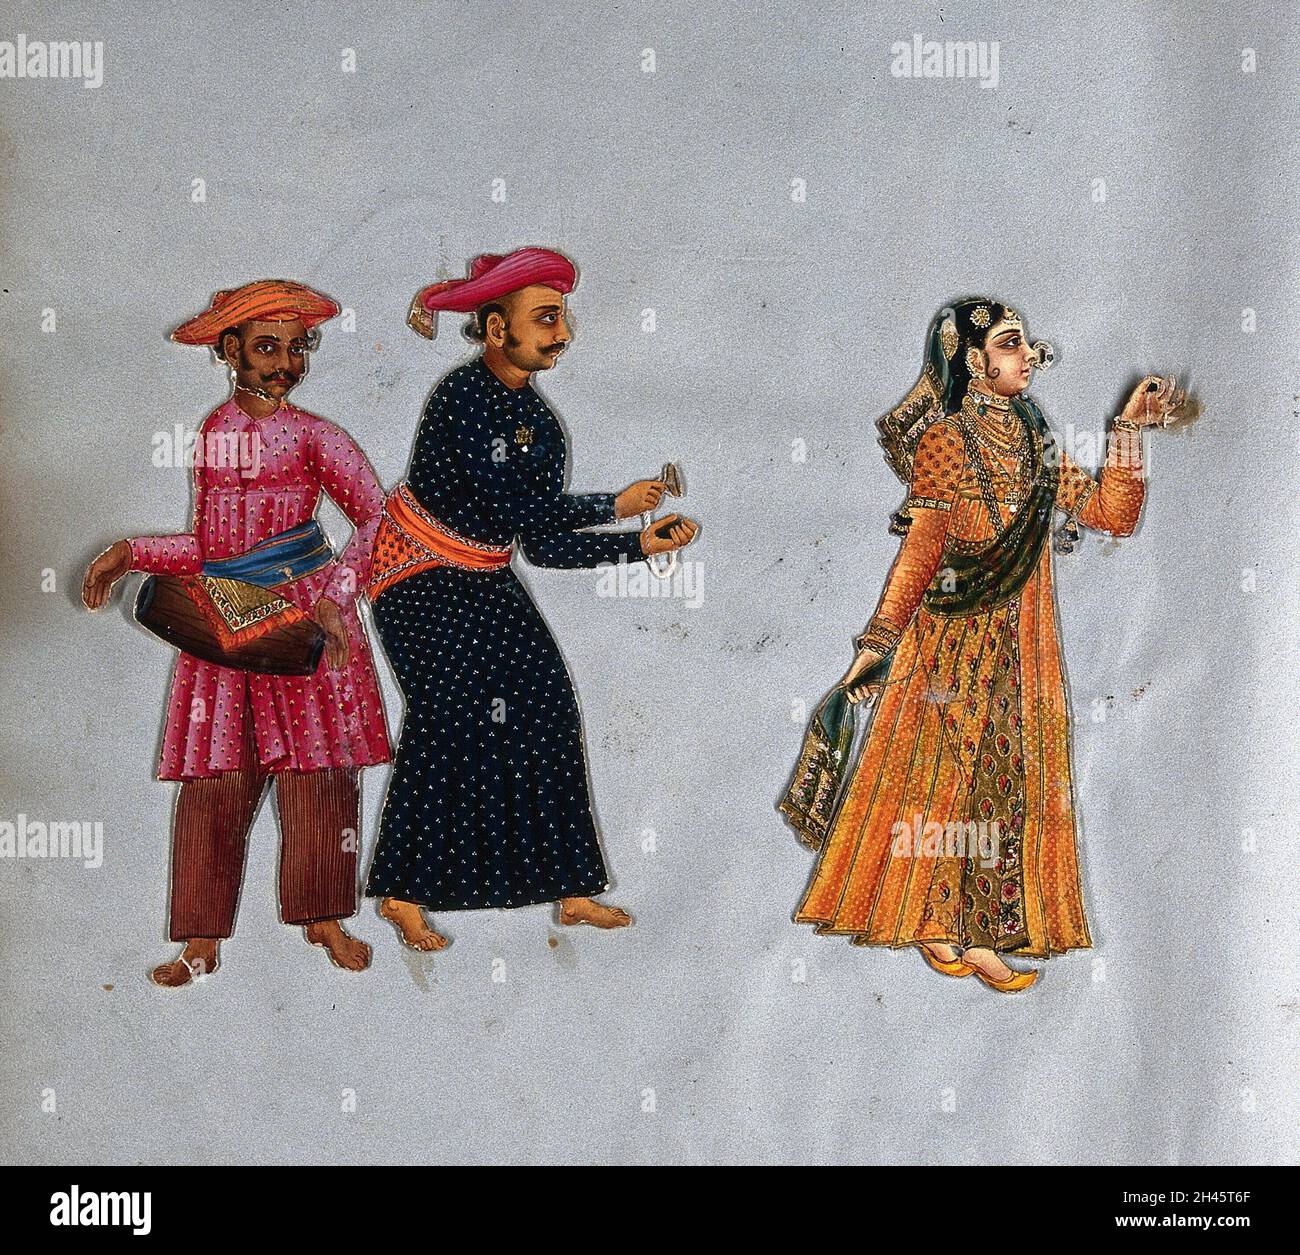 Eine muslimische tanzende Frau mit zwei männlichen Musikern aus Südindien. Gouache malen. Stockfoto